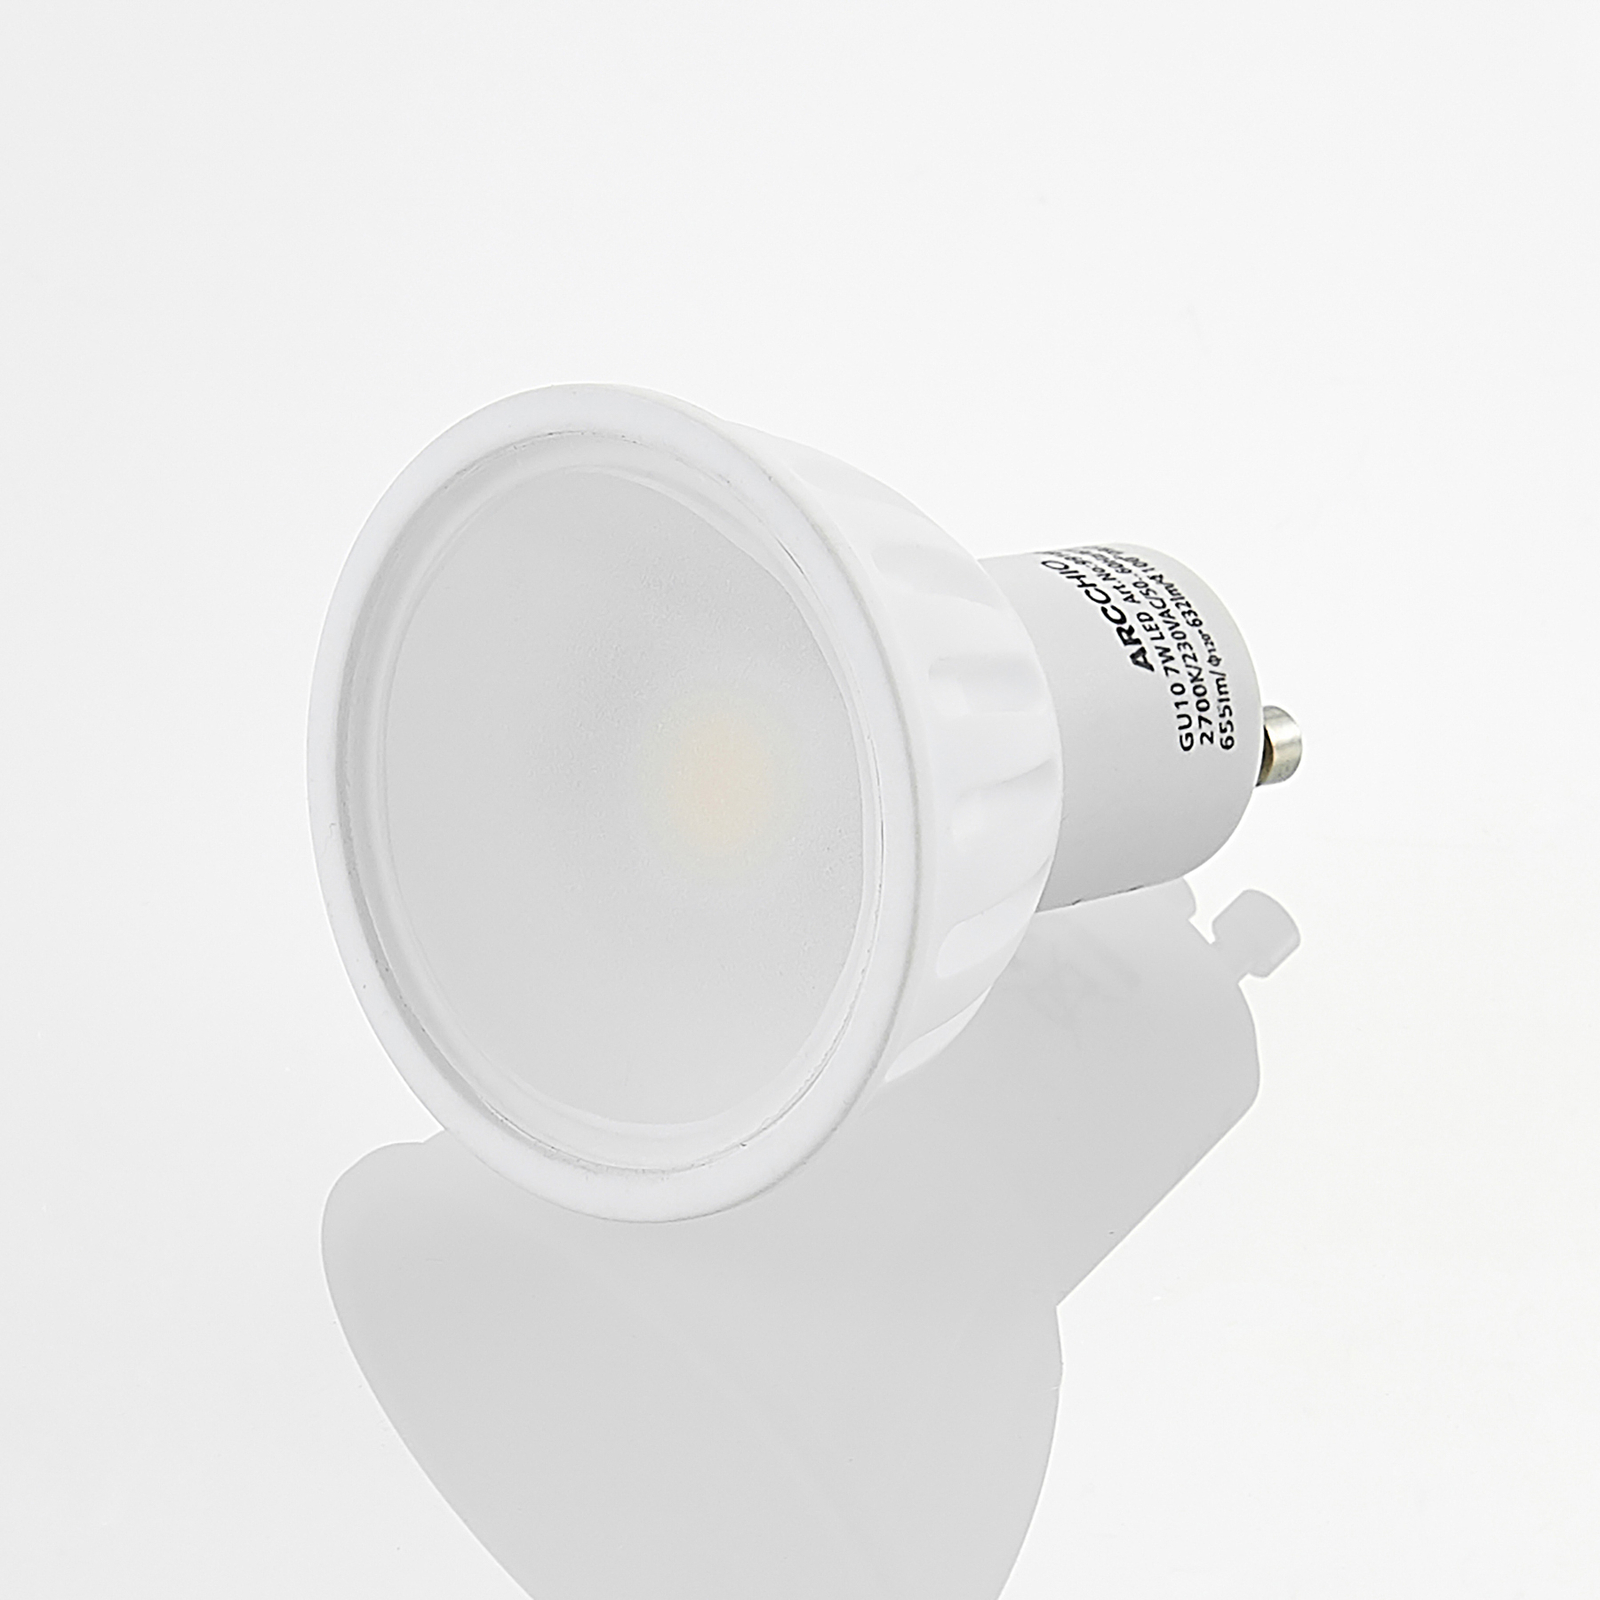 Arcchio reflector LED bulb GU10 100° 7W 2,700K 3x